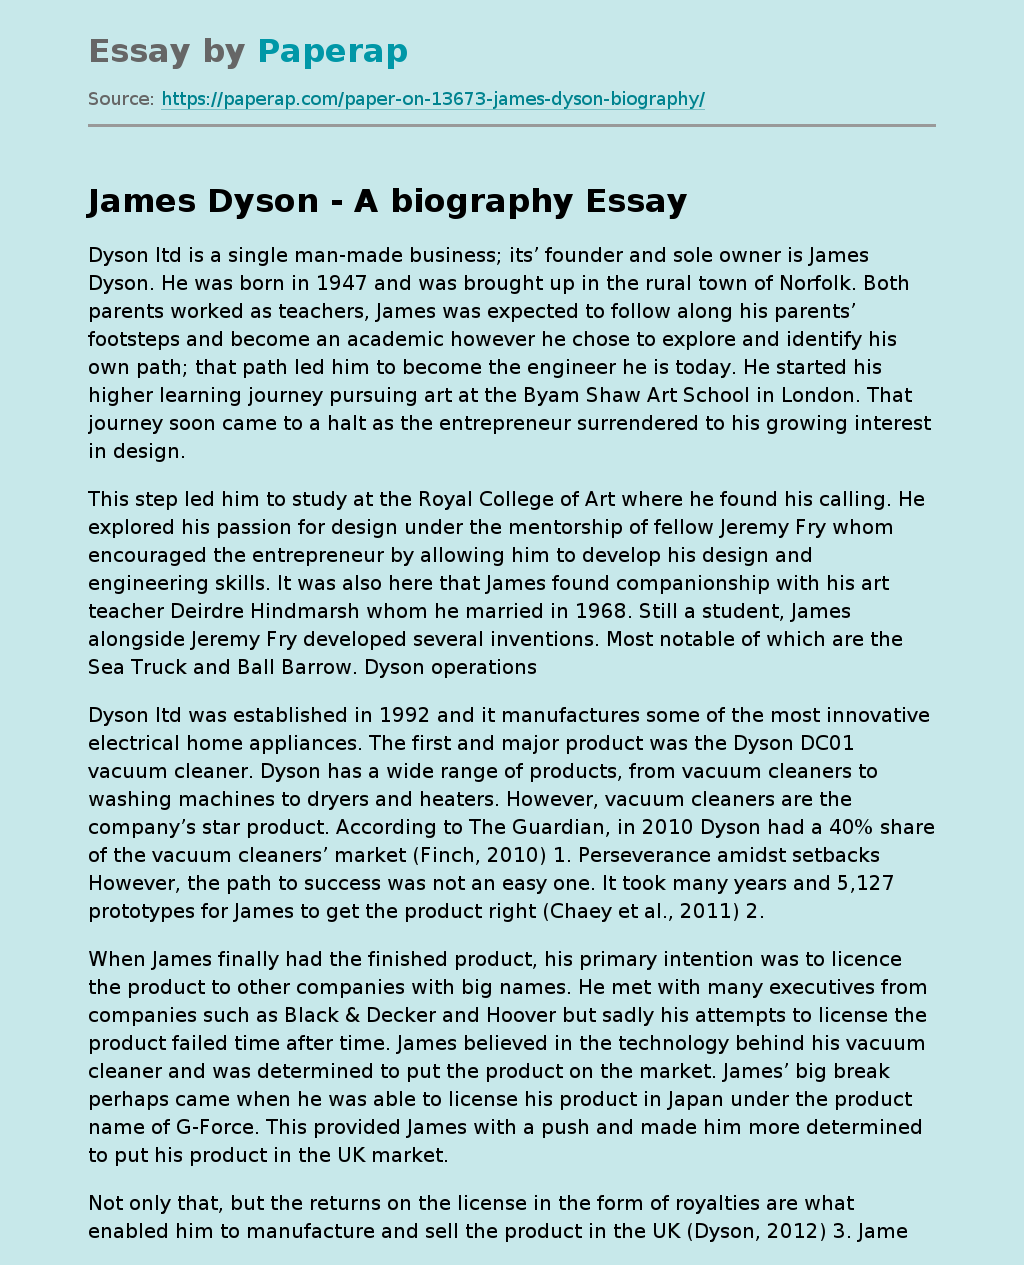 James Dyson - A biography